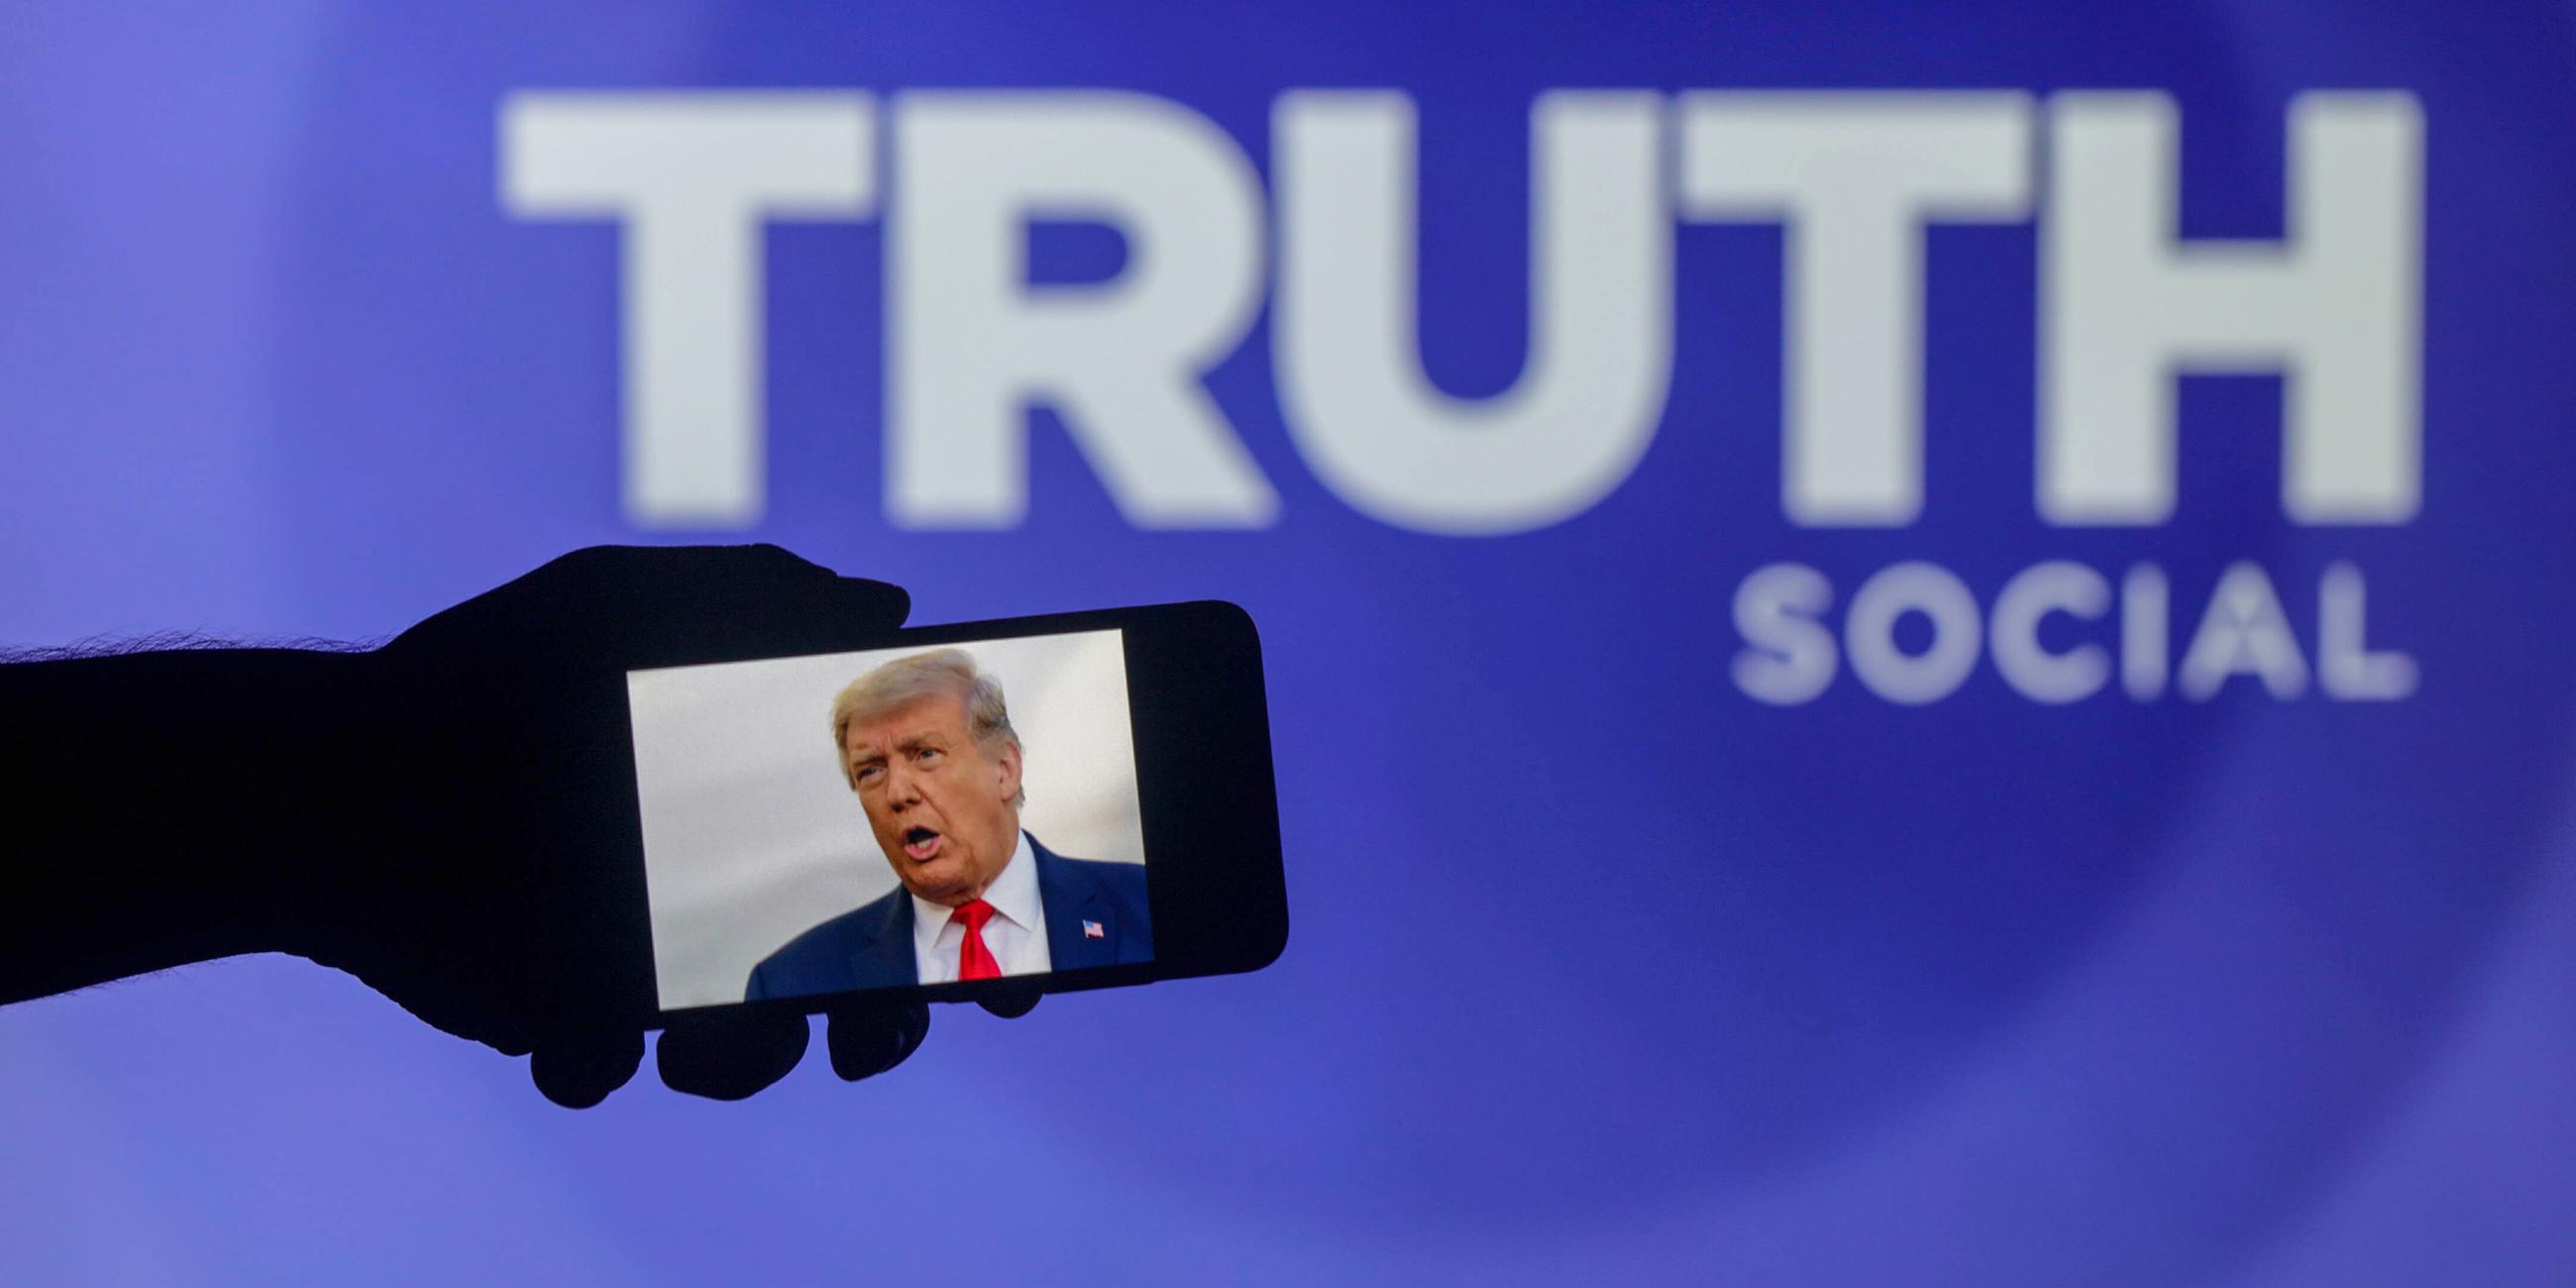 Symbolbild: Trumps Internetplattform "Truth Social" 